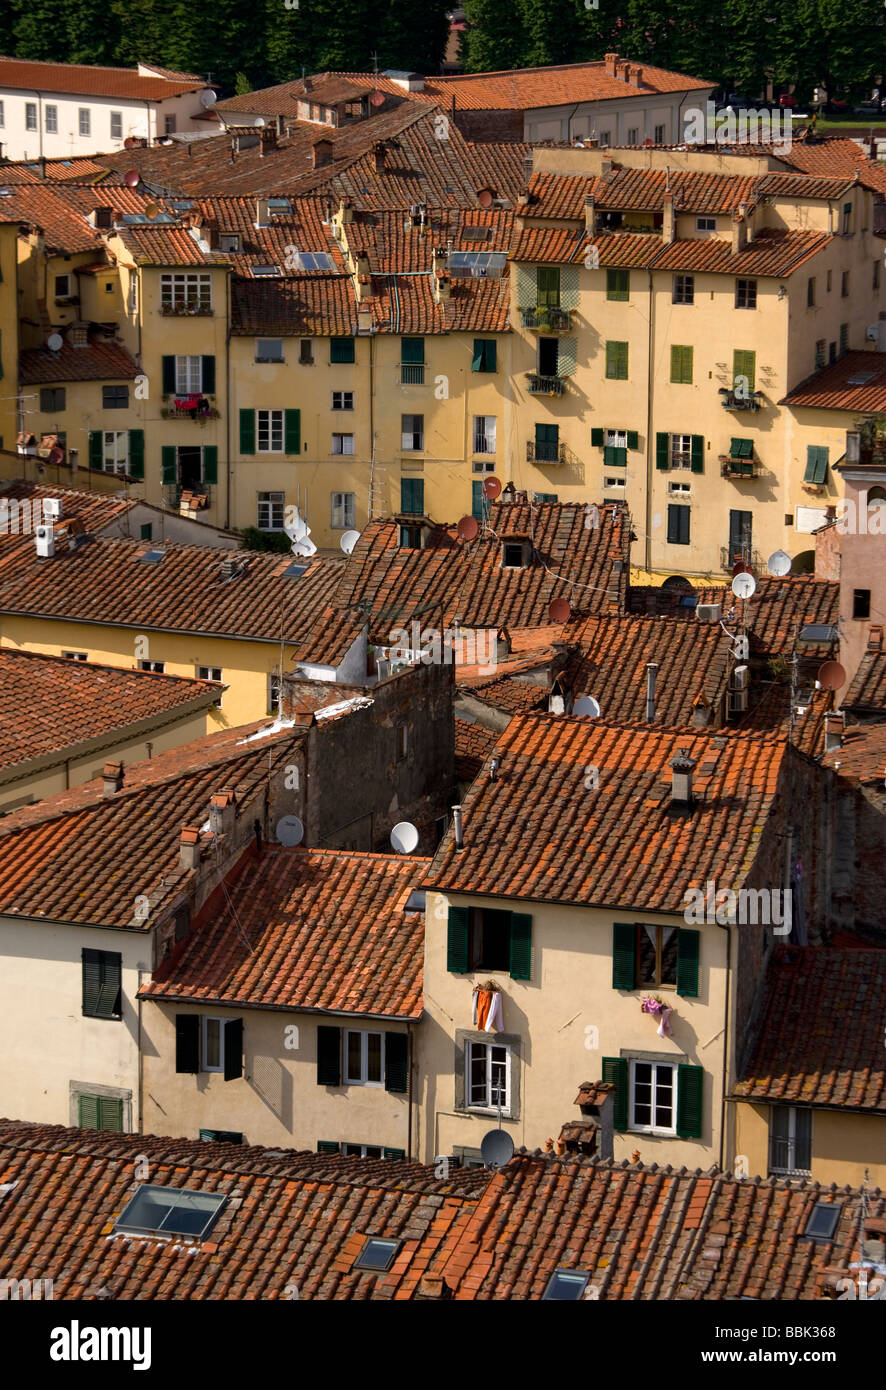 Vue de la ville haute de Torre Guinigi à piazza anfietatro, Lucca, Toscane, Italie, Europe Banque D'Images